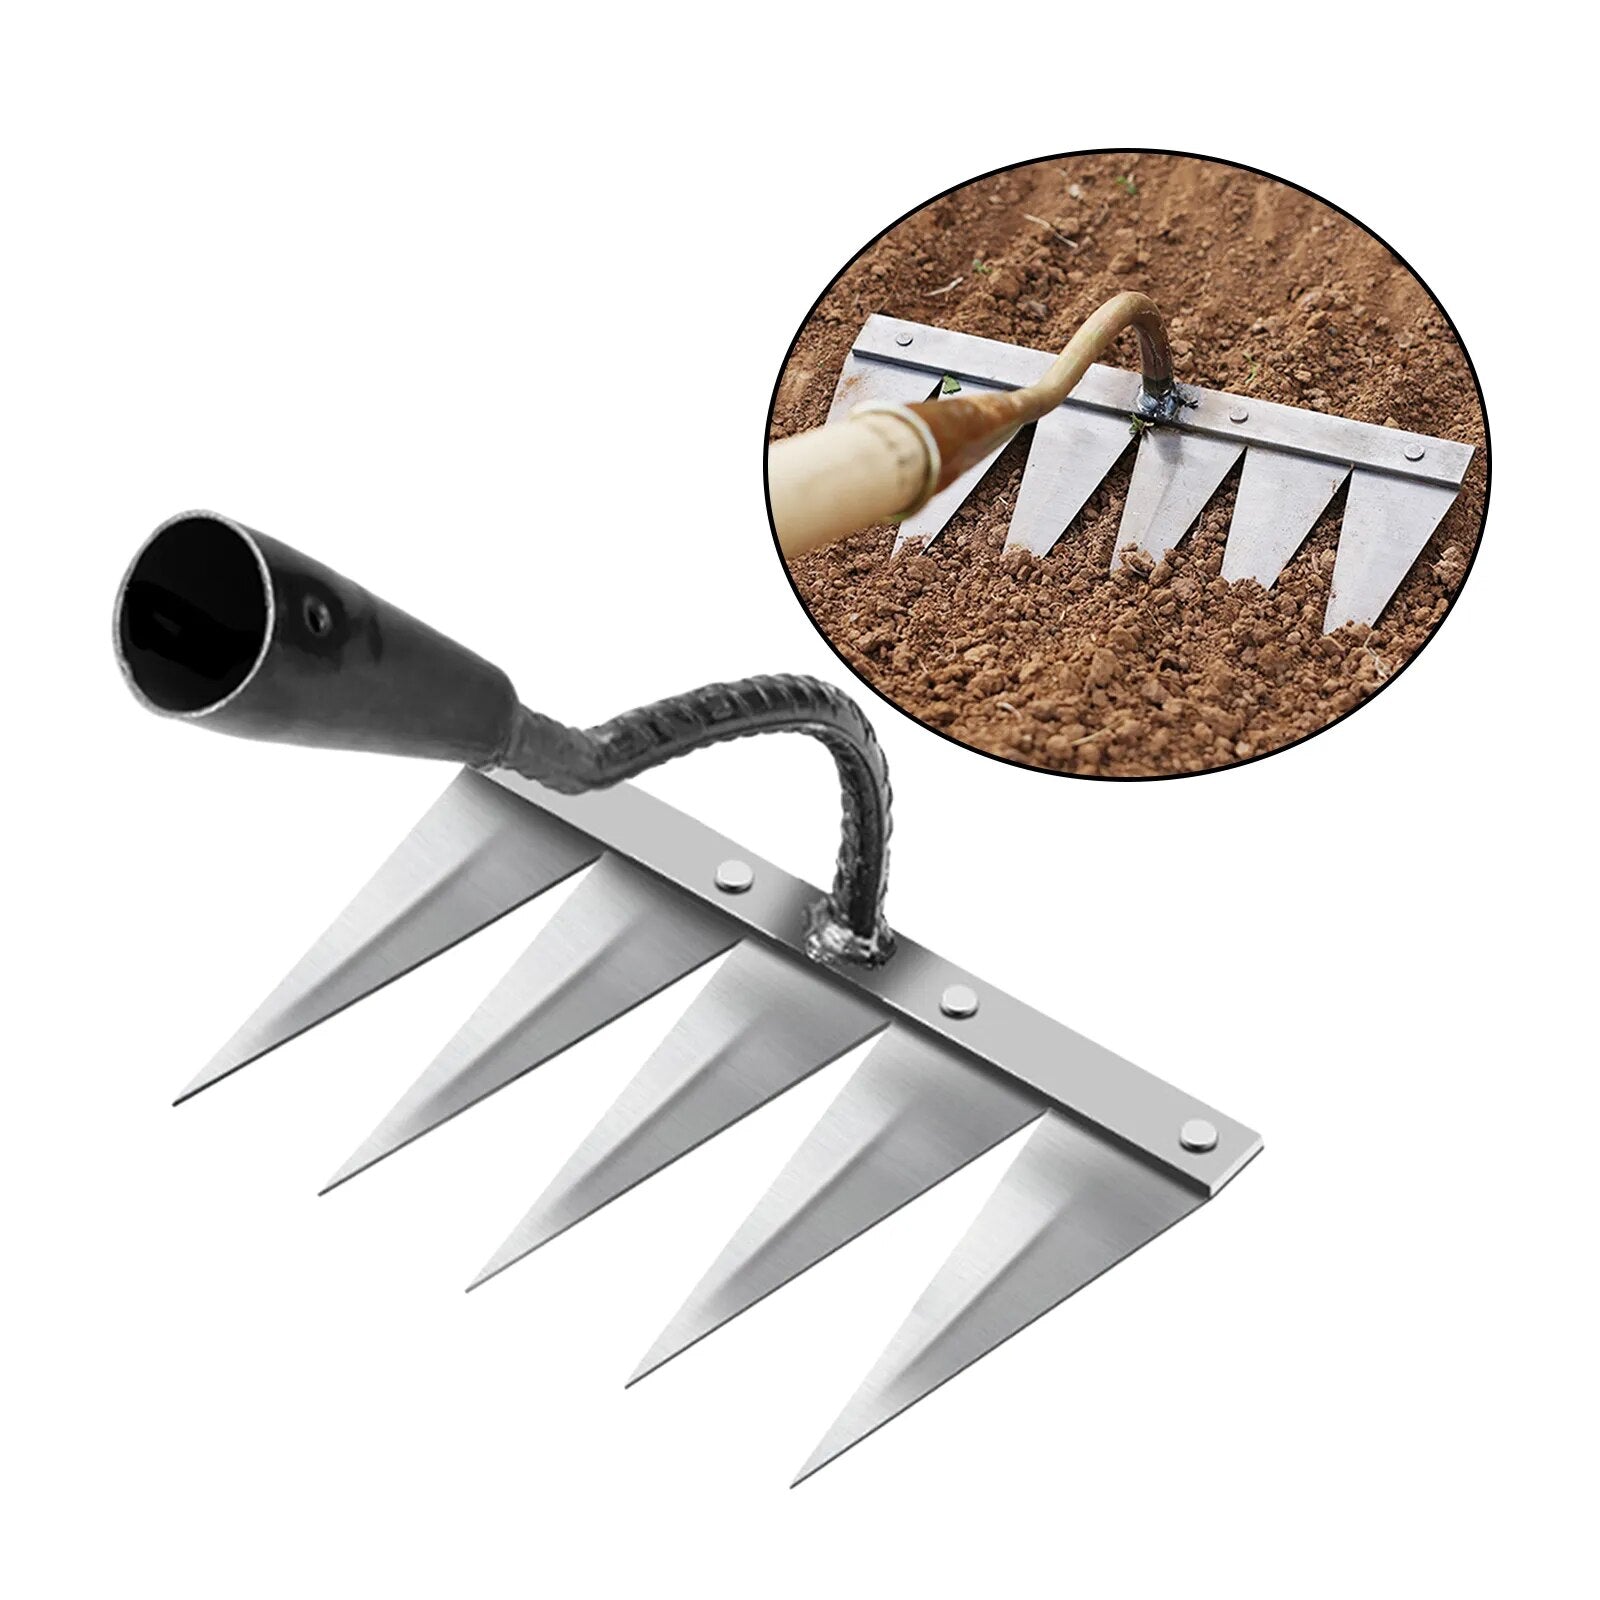 Saber tooth shovel rake for Farming and gardening – hookupcart